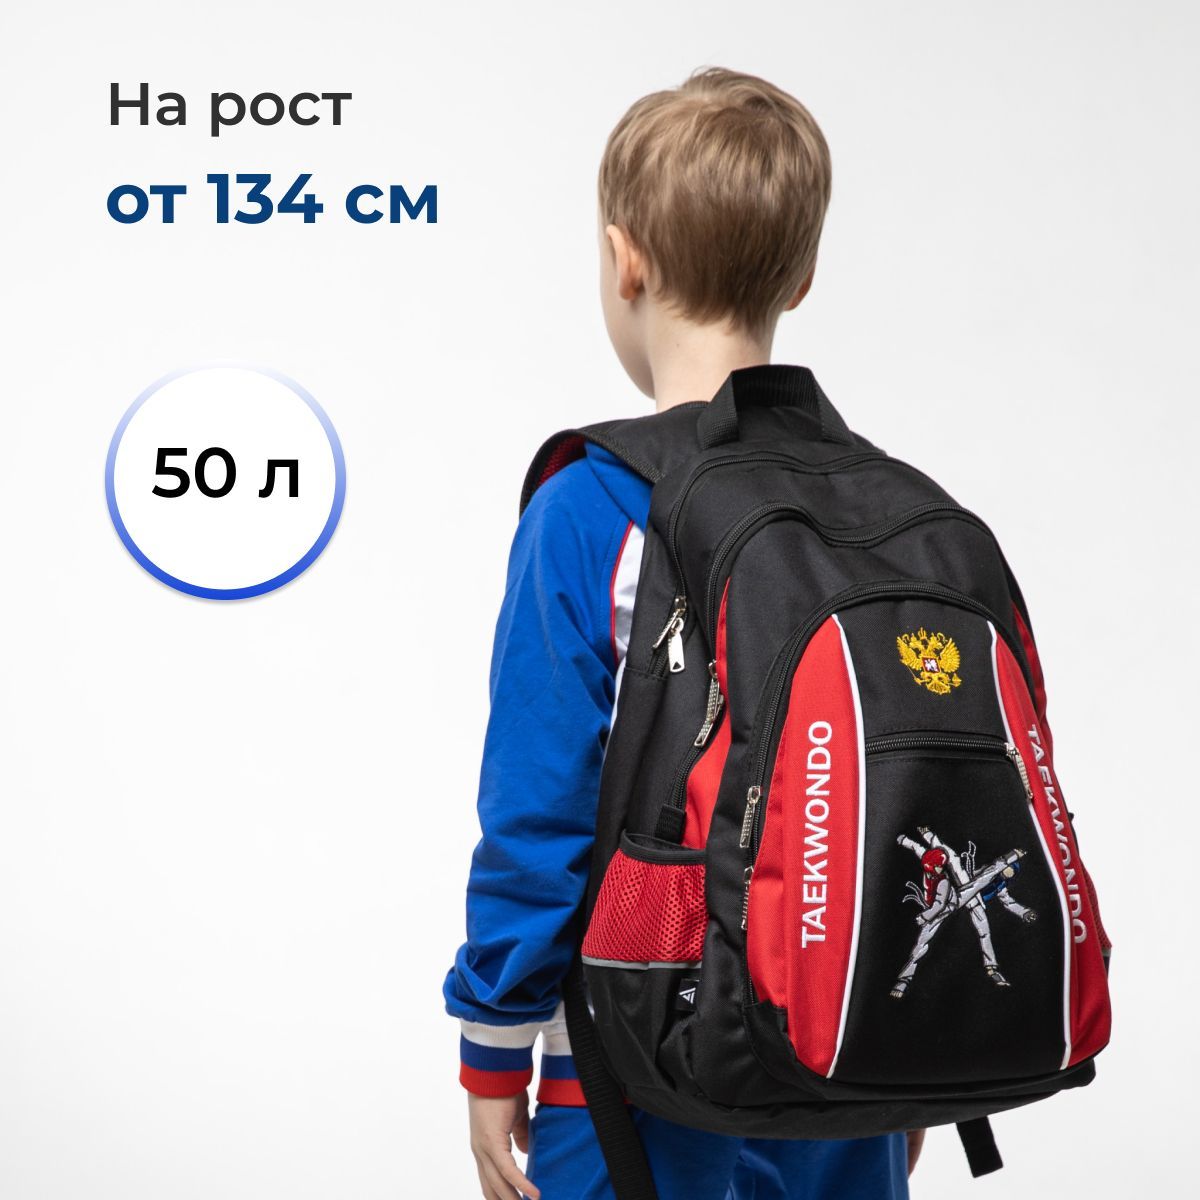 Спортивный рюкзак тхэквондо для защиты VincoBag на тренировку 50 литров